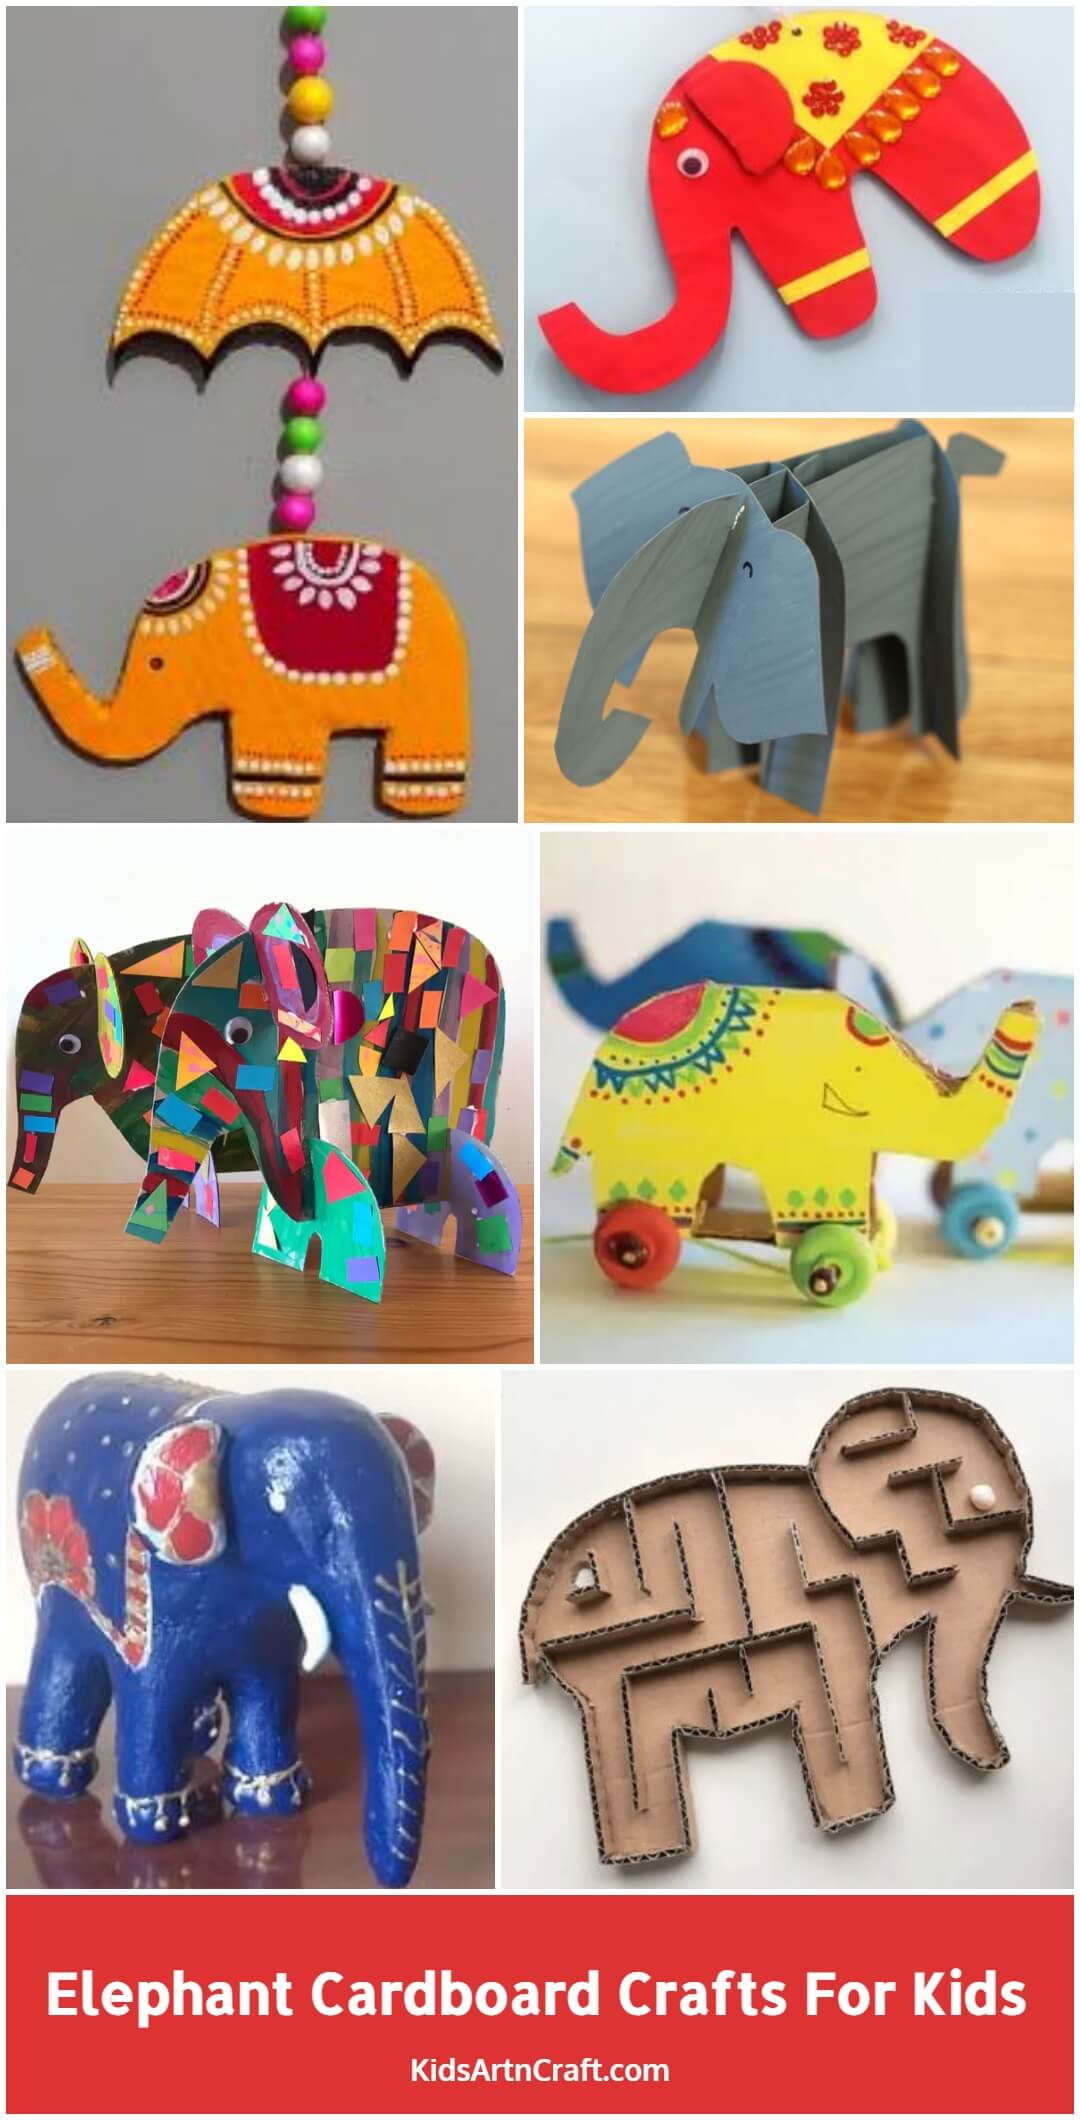 Elephant Cardboard Crafts for Kids - Kids Art & Craft